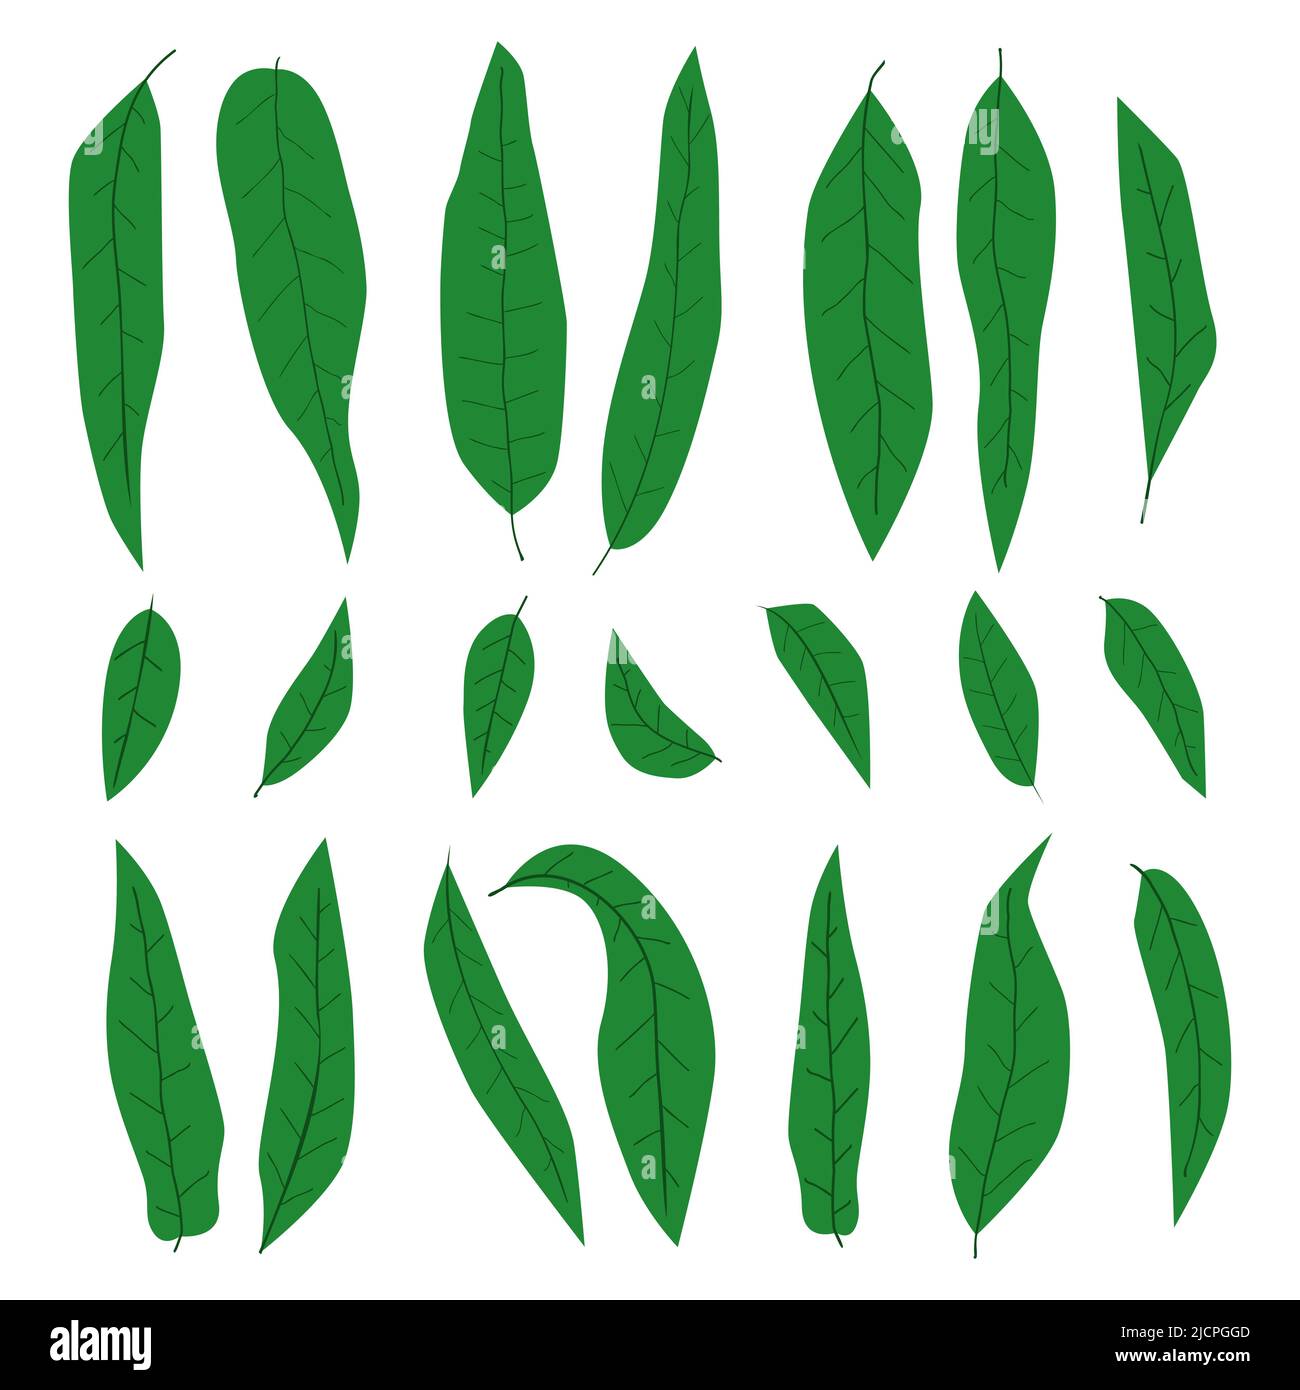 Handgezeichnetes Mangoblätter-Set, verschiedene Formen der abstrakten einfachen grünen Blätter-Kollektion, Elemente für Öko- und Bio-Design, Accessoire-Dekor für moderne il Stock Vektor